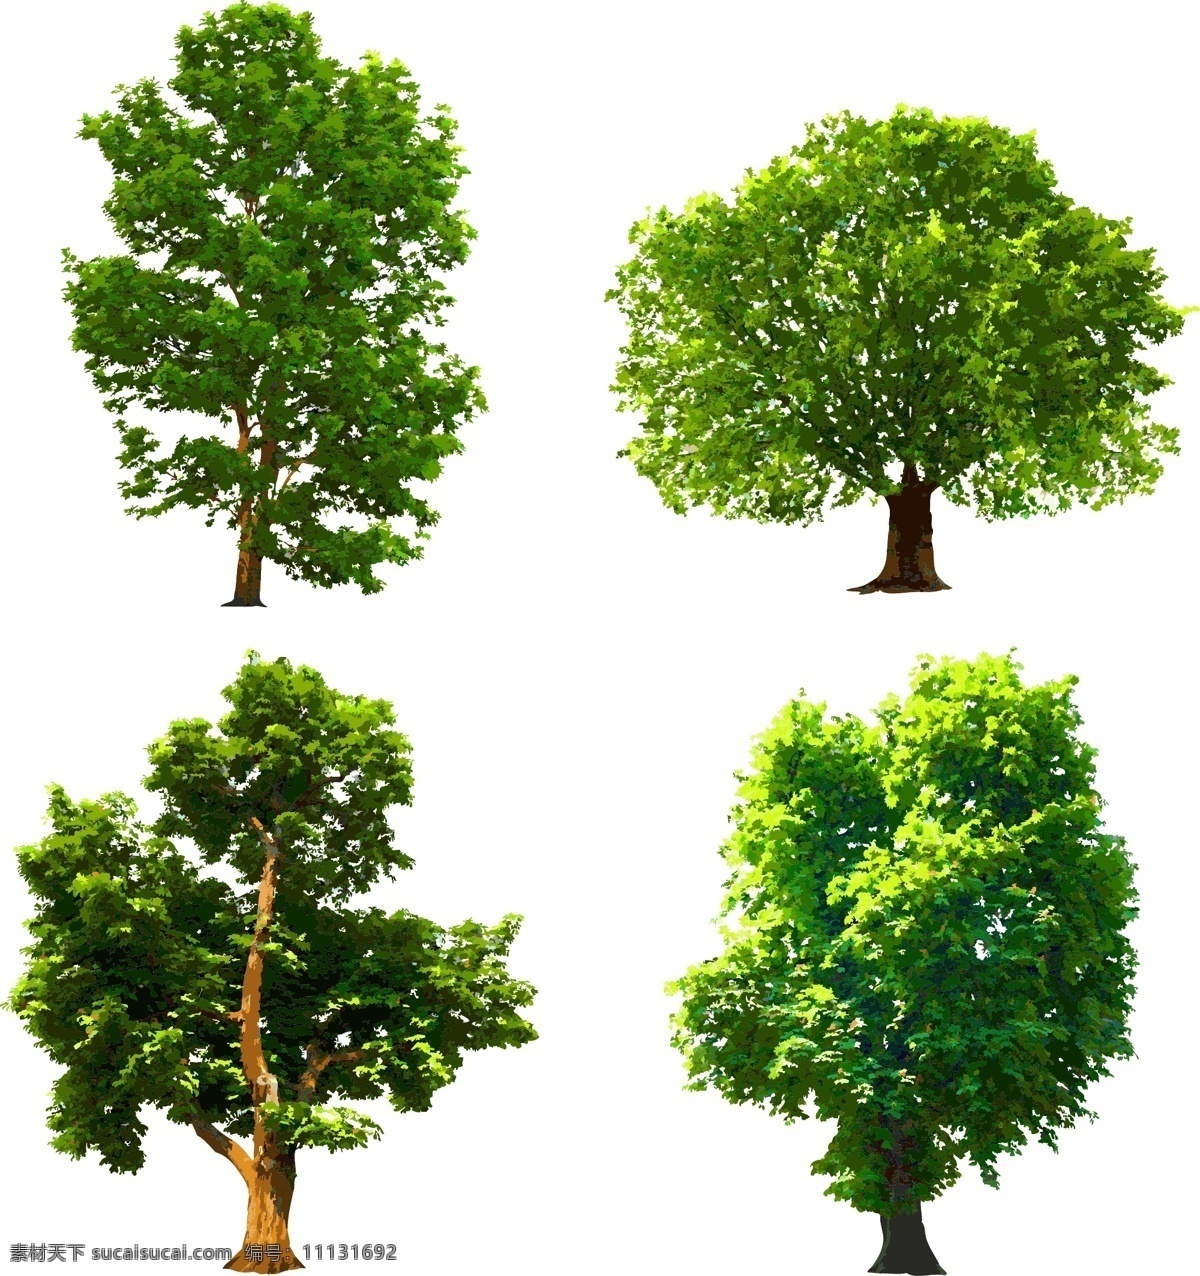 实用 矢量 树 装饰 使用 树木 矢量素材 设计素材 背景素材